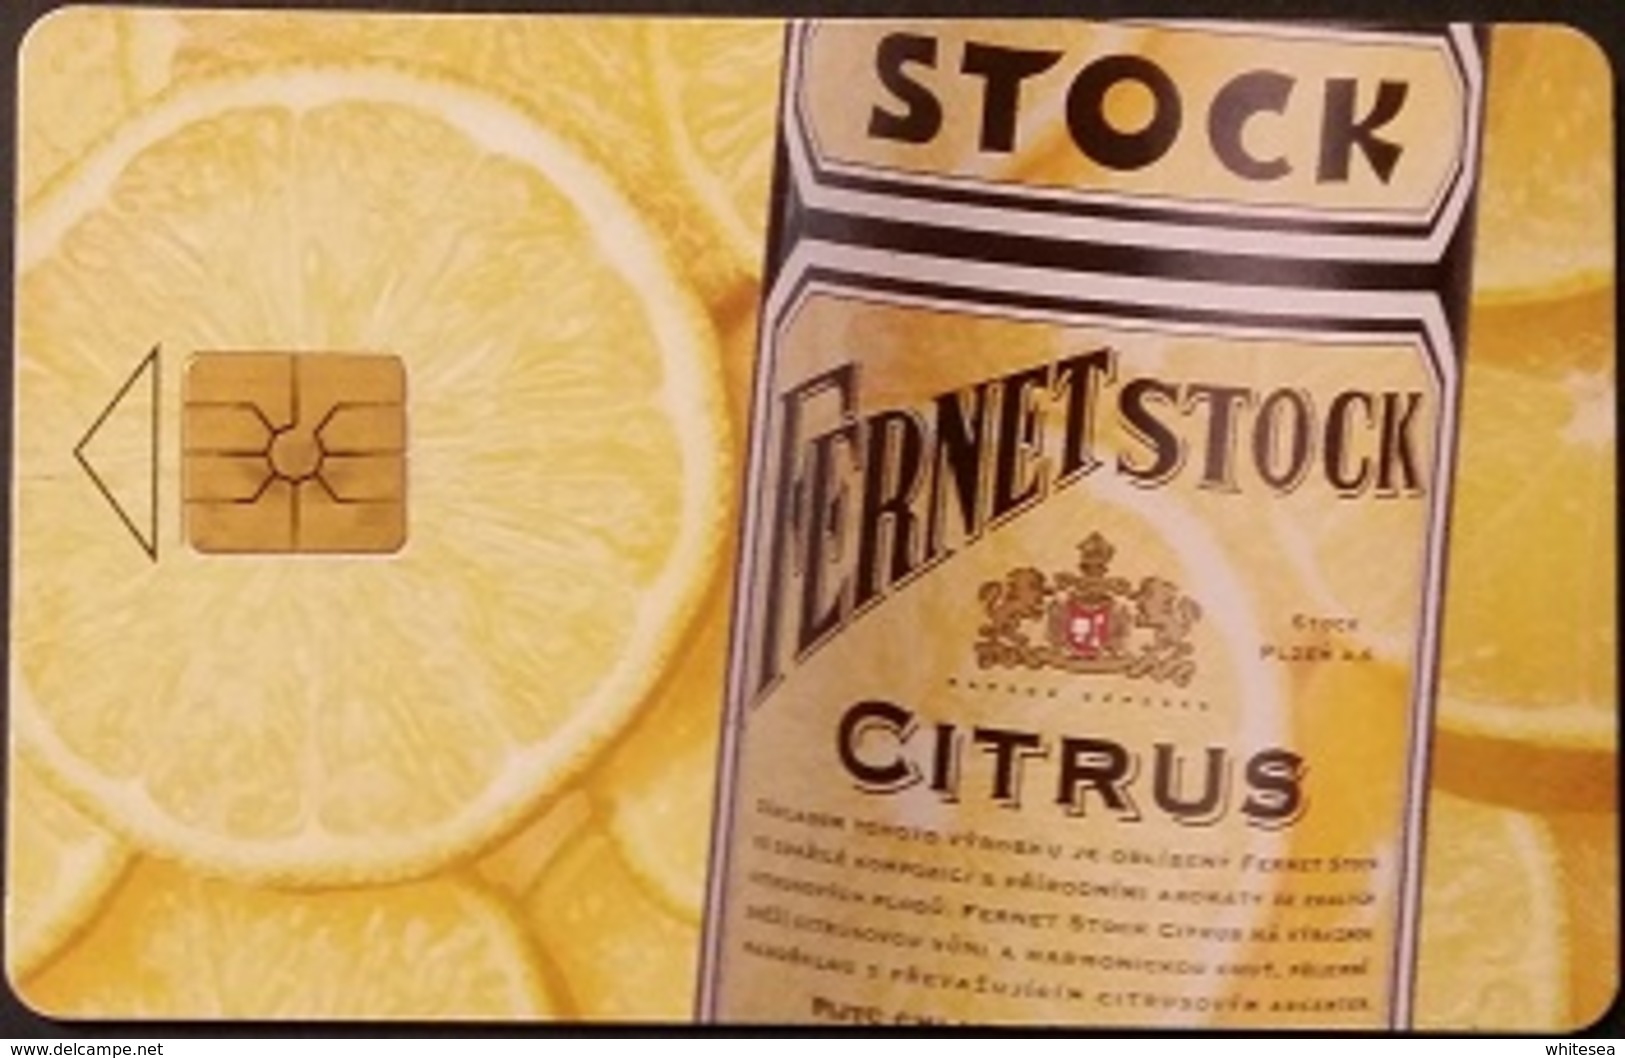 Telefonkarte Tschechien - Werbung - Fernet Stock Citrus - 47/10.97 - Tschechische Rep.